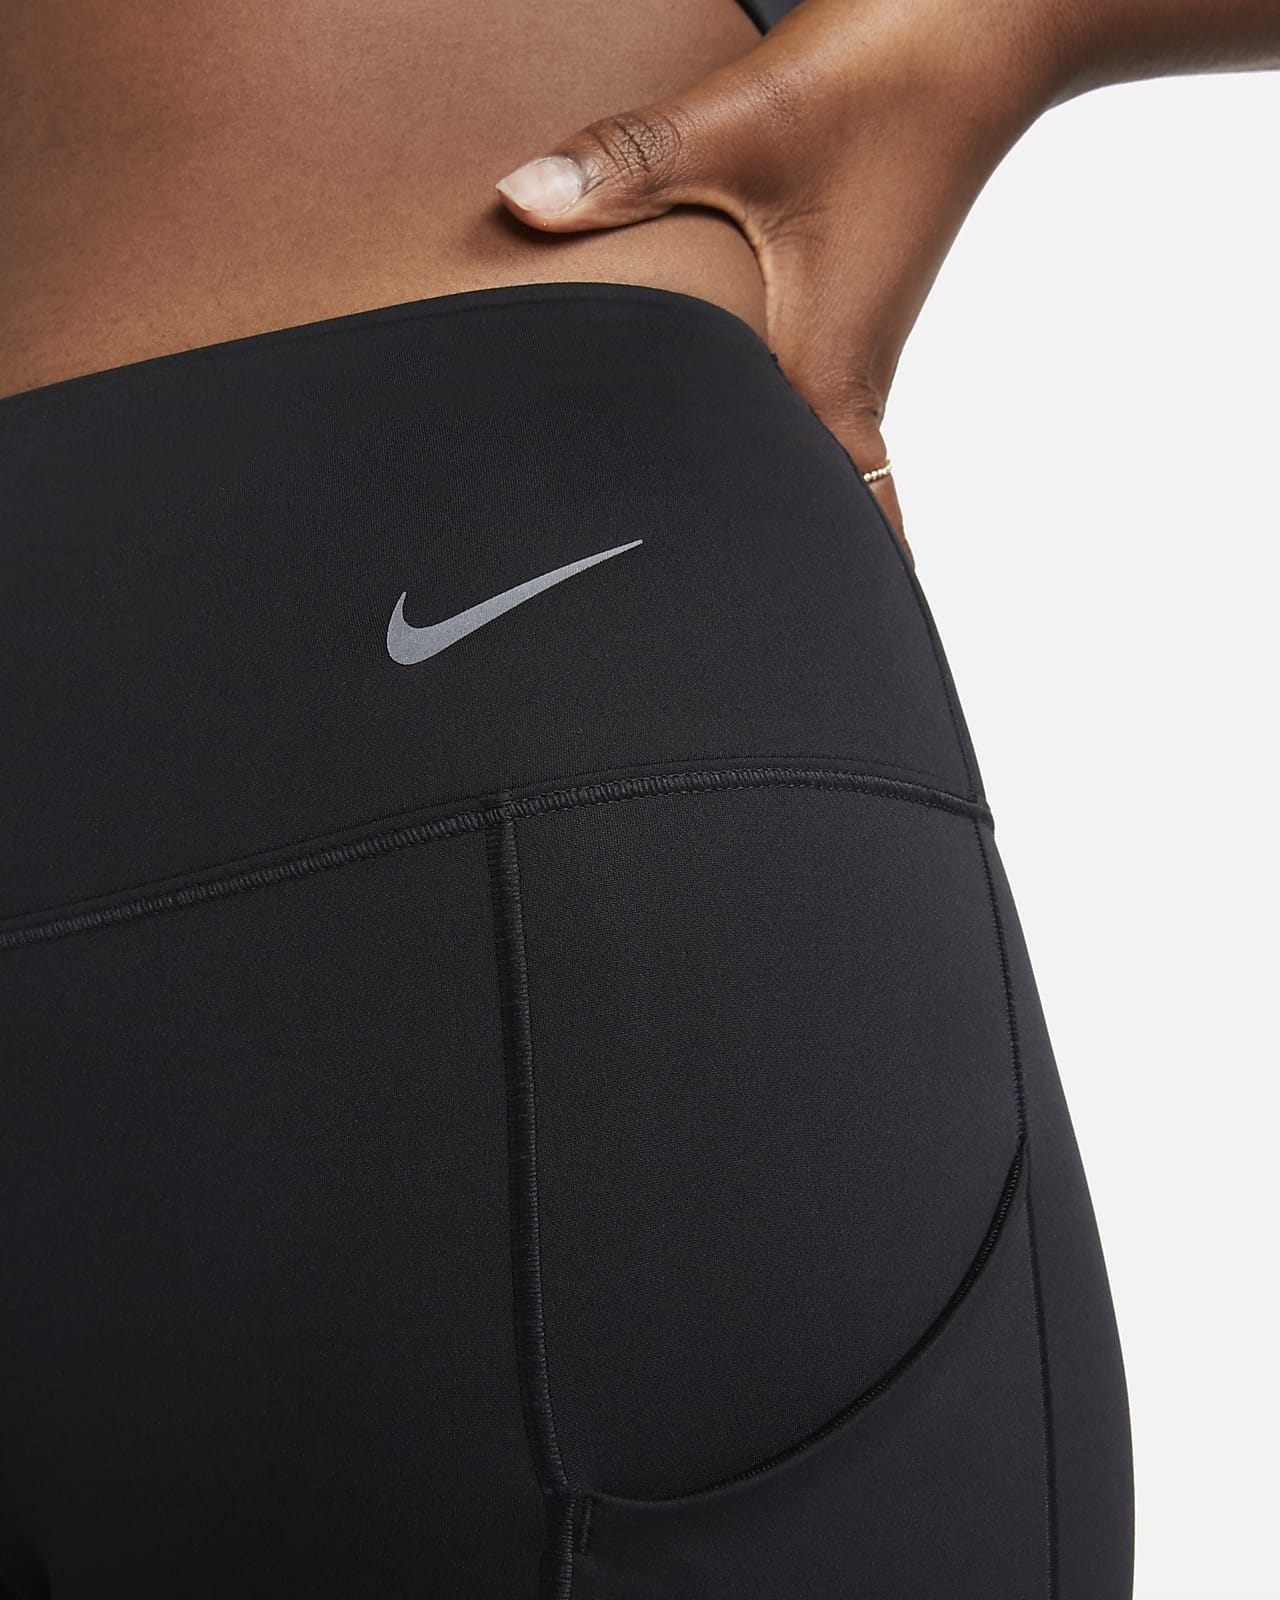 Nike Power Women's Training Trousers. Nike LU